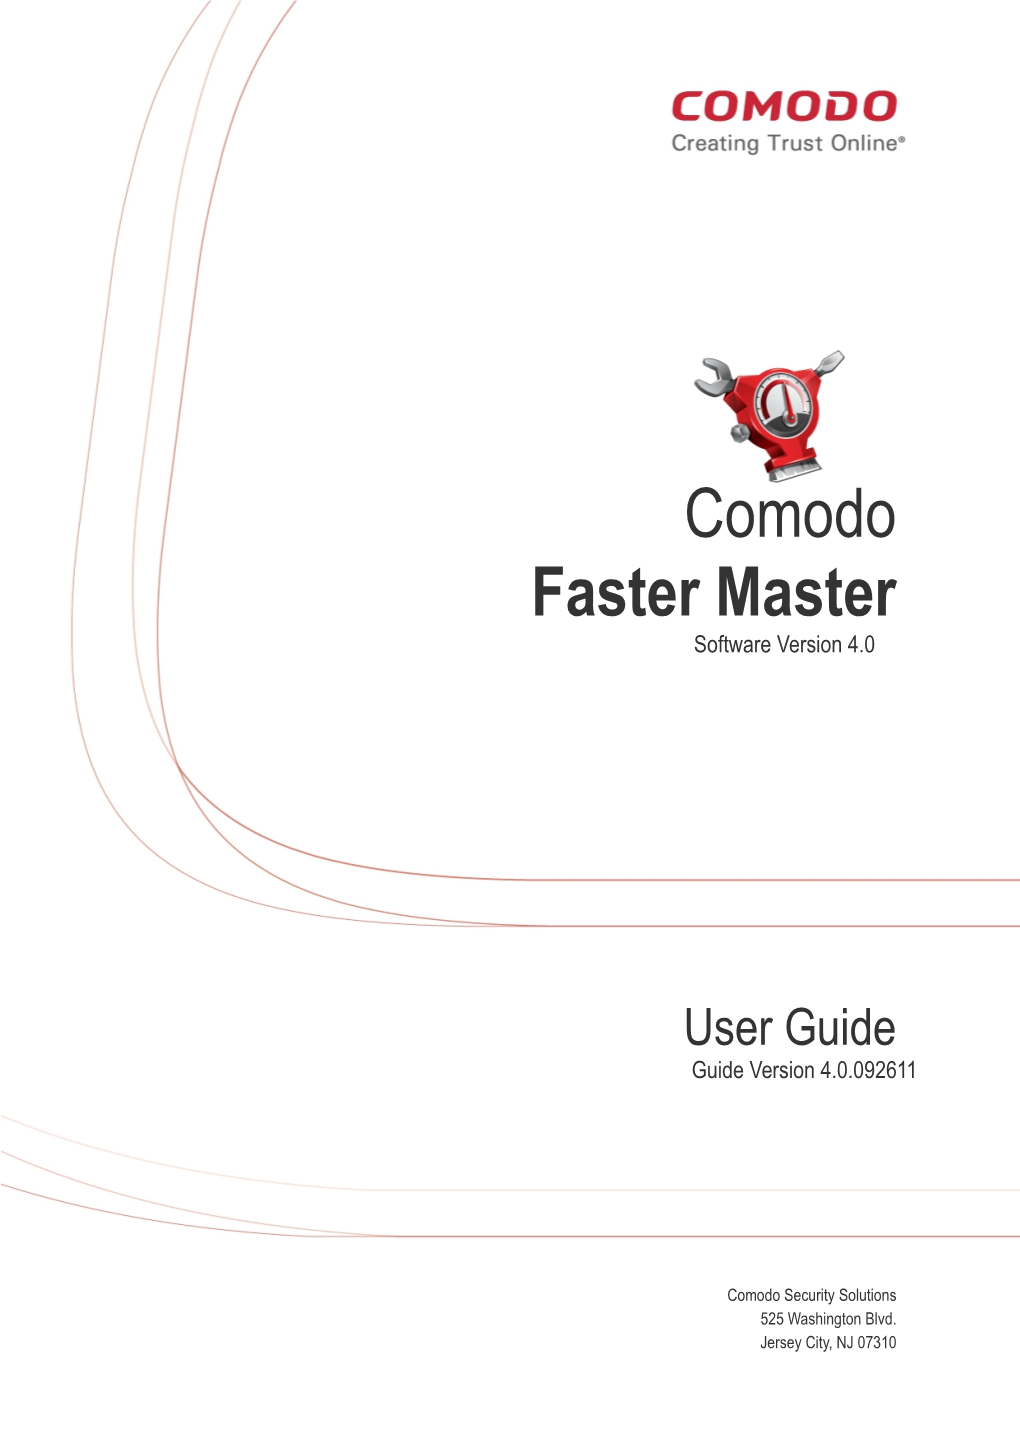 Comodo Faster Master User Guide | © 2011 Comodo Security Solutions Inc